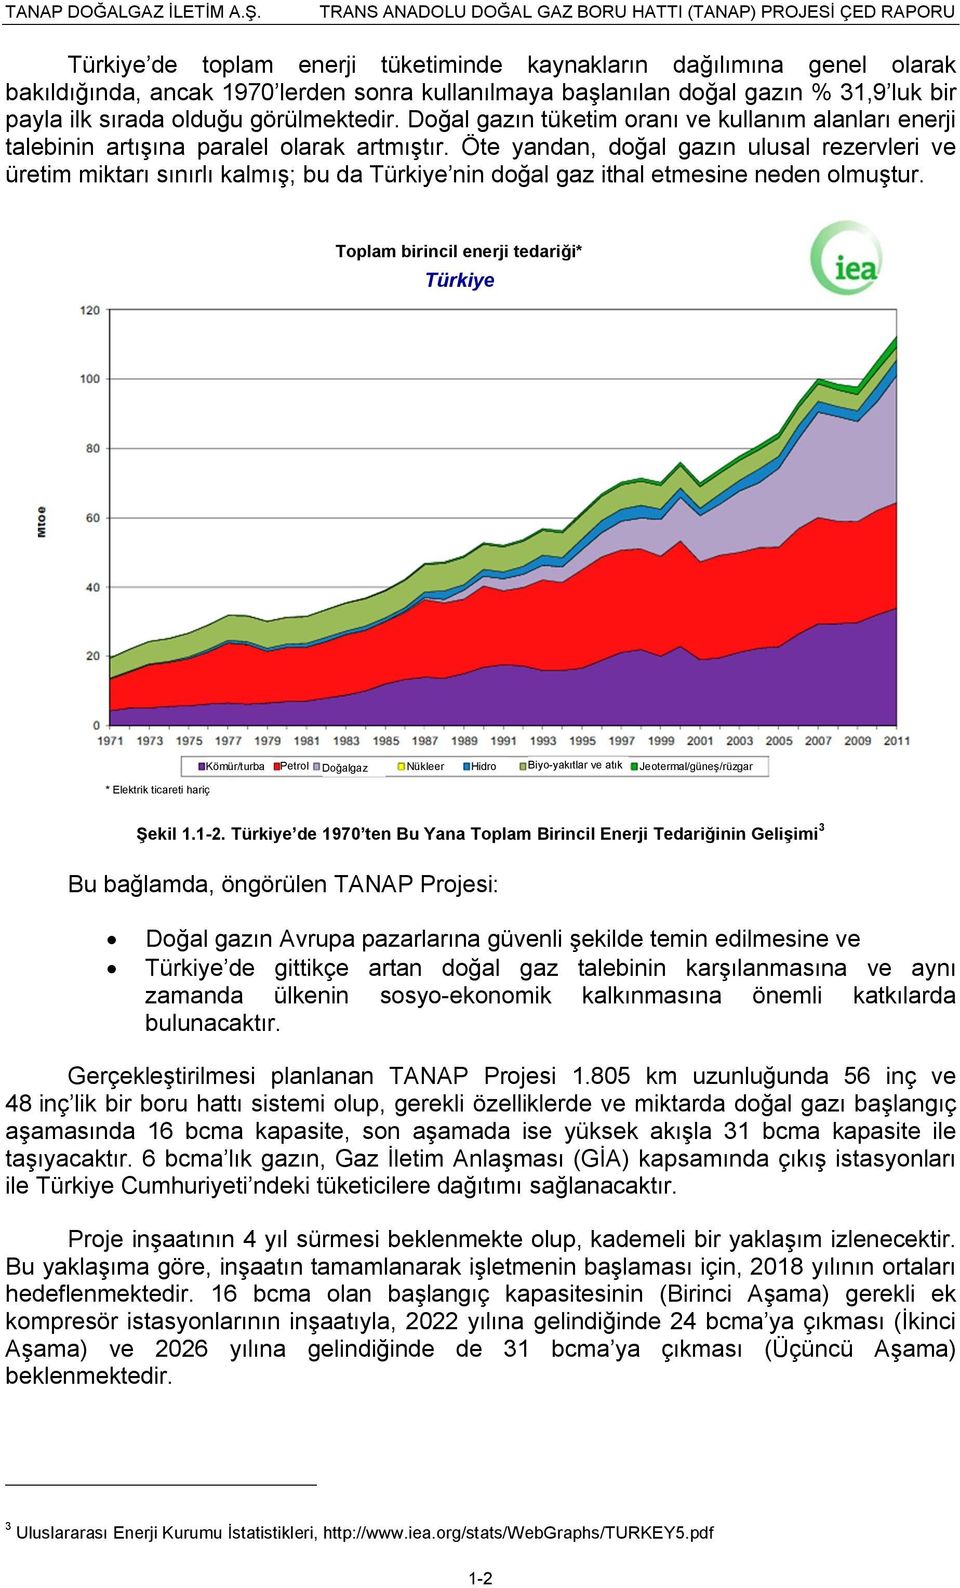 Öte yandan, doğal gazın ulusal rezervleri ve üretim miktarı sınırlı kalmış; bu da Türkiye nin doğal gaz ithal etmesine neden olmuştur.